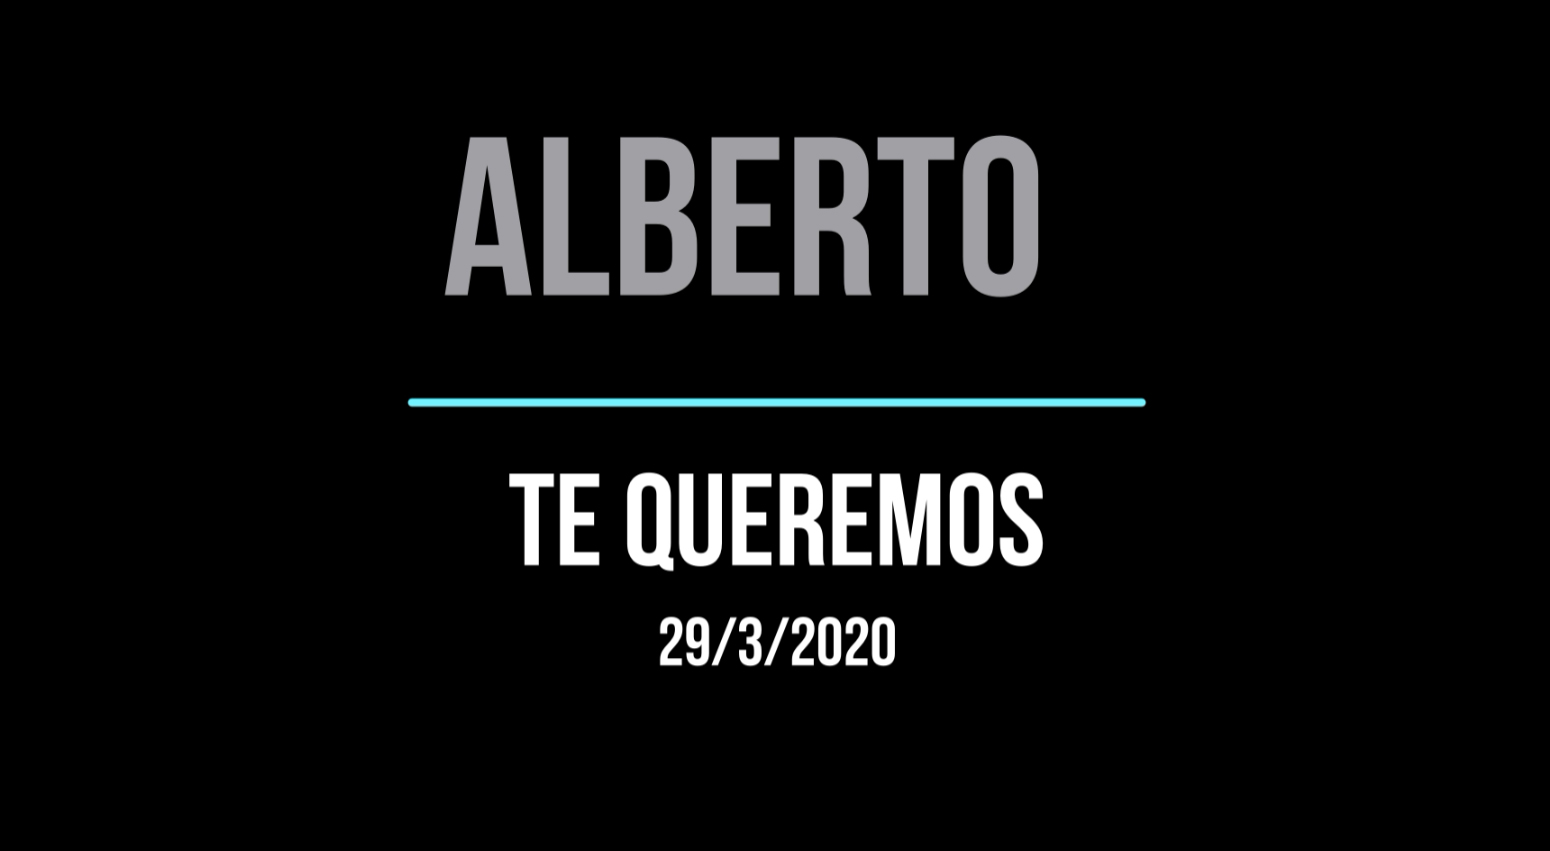 Alberto: Te queremos (29/3/2020)